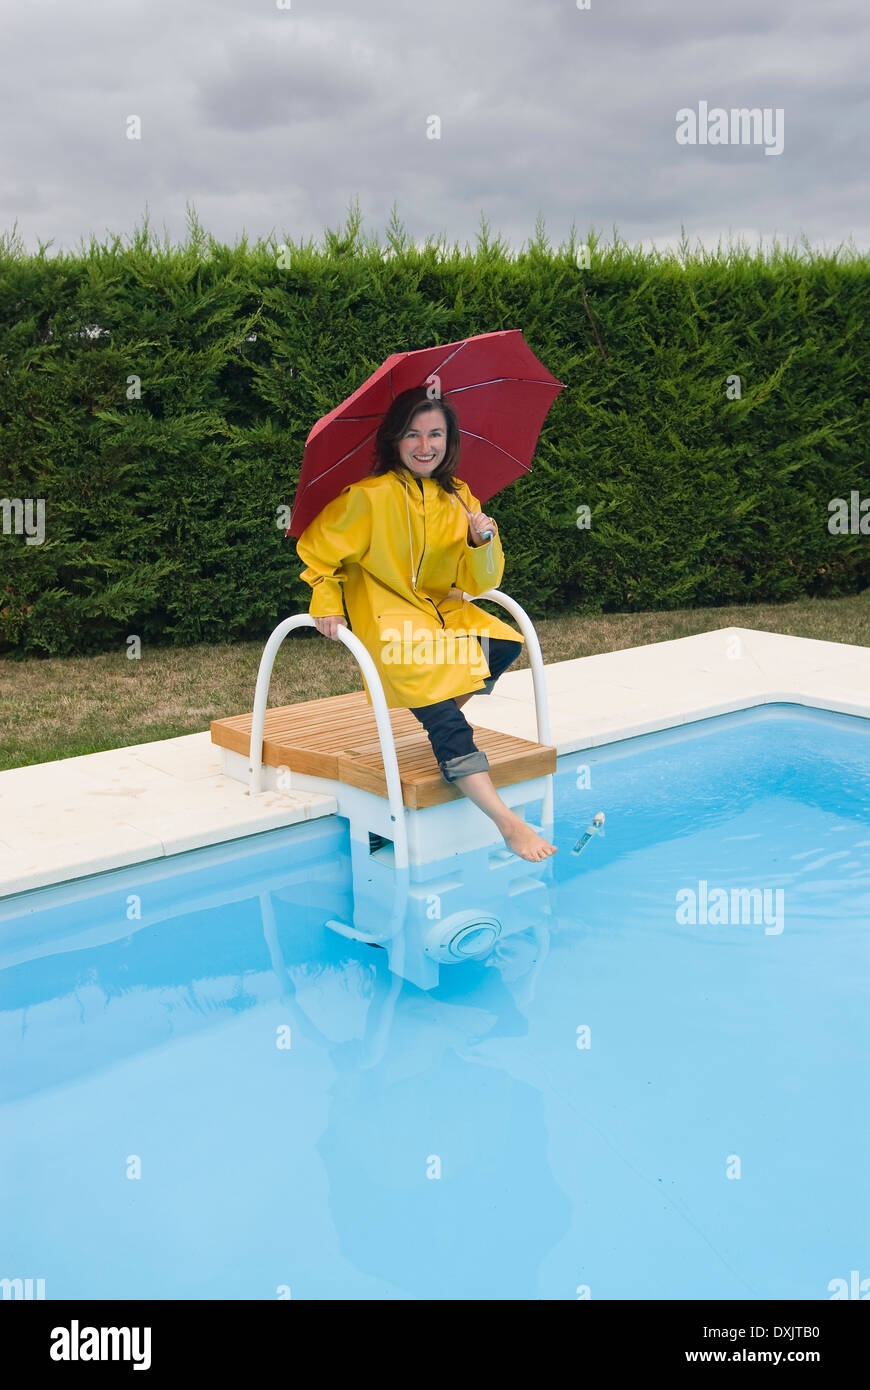 woman in rainwear tipping toe into swimming pool Stock Photo